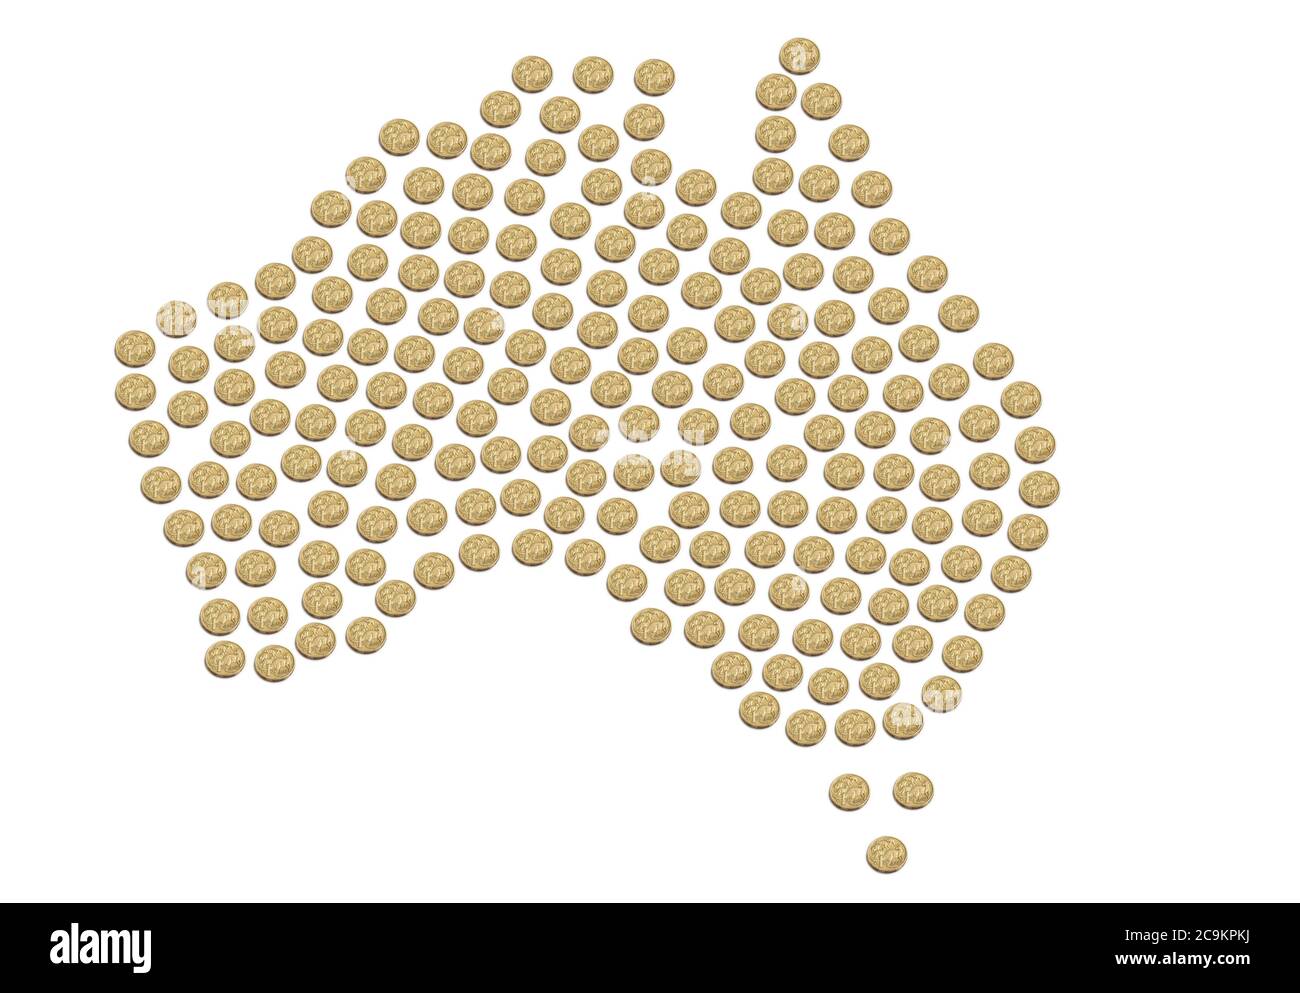 Mappa dell'Australia composta da monete australiane da un dollaro Foto Stock